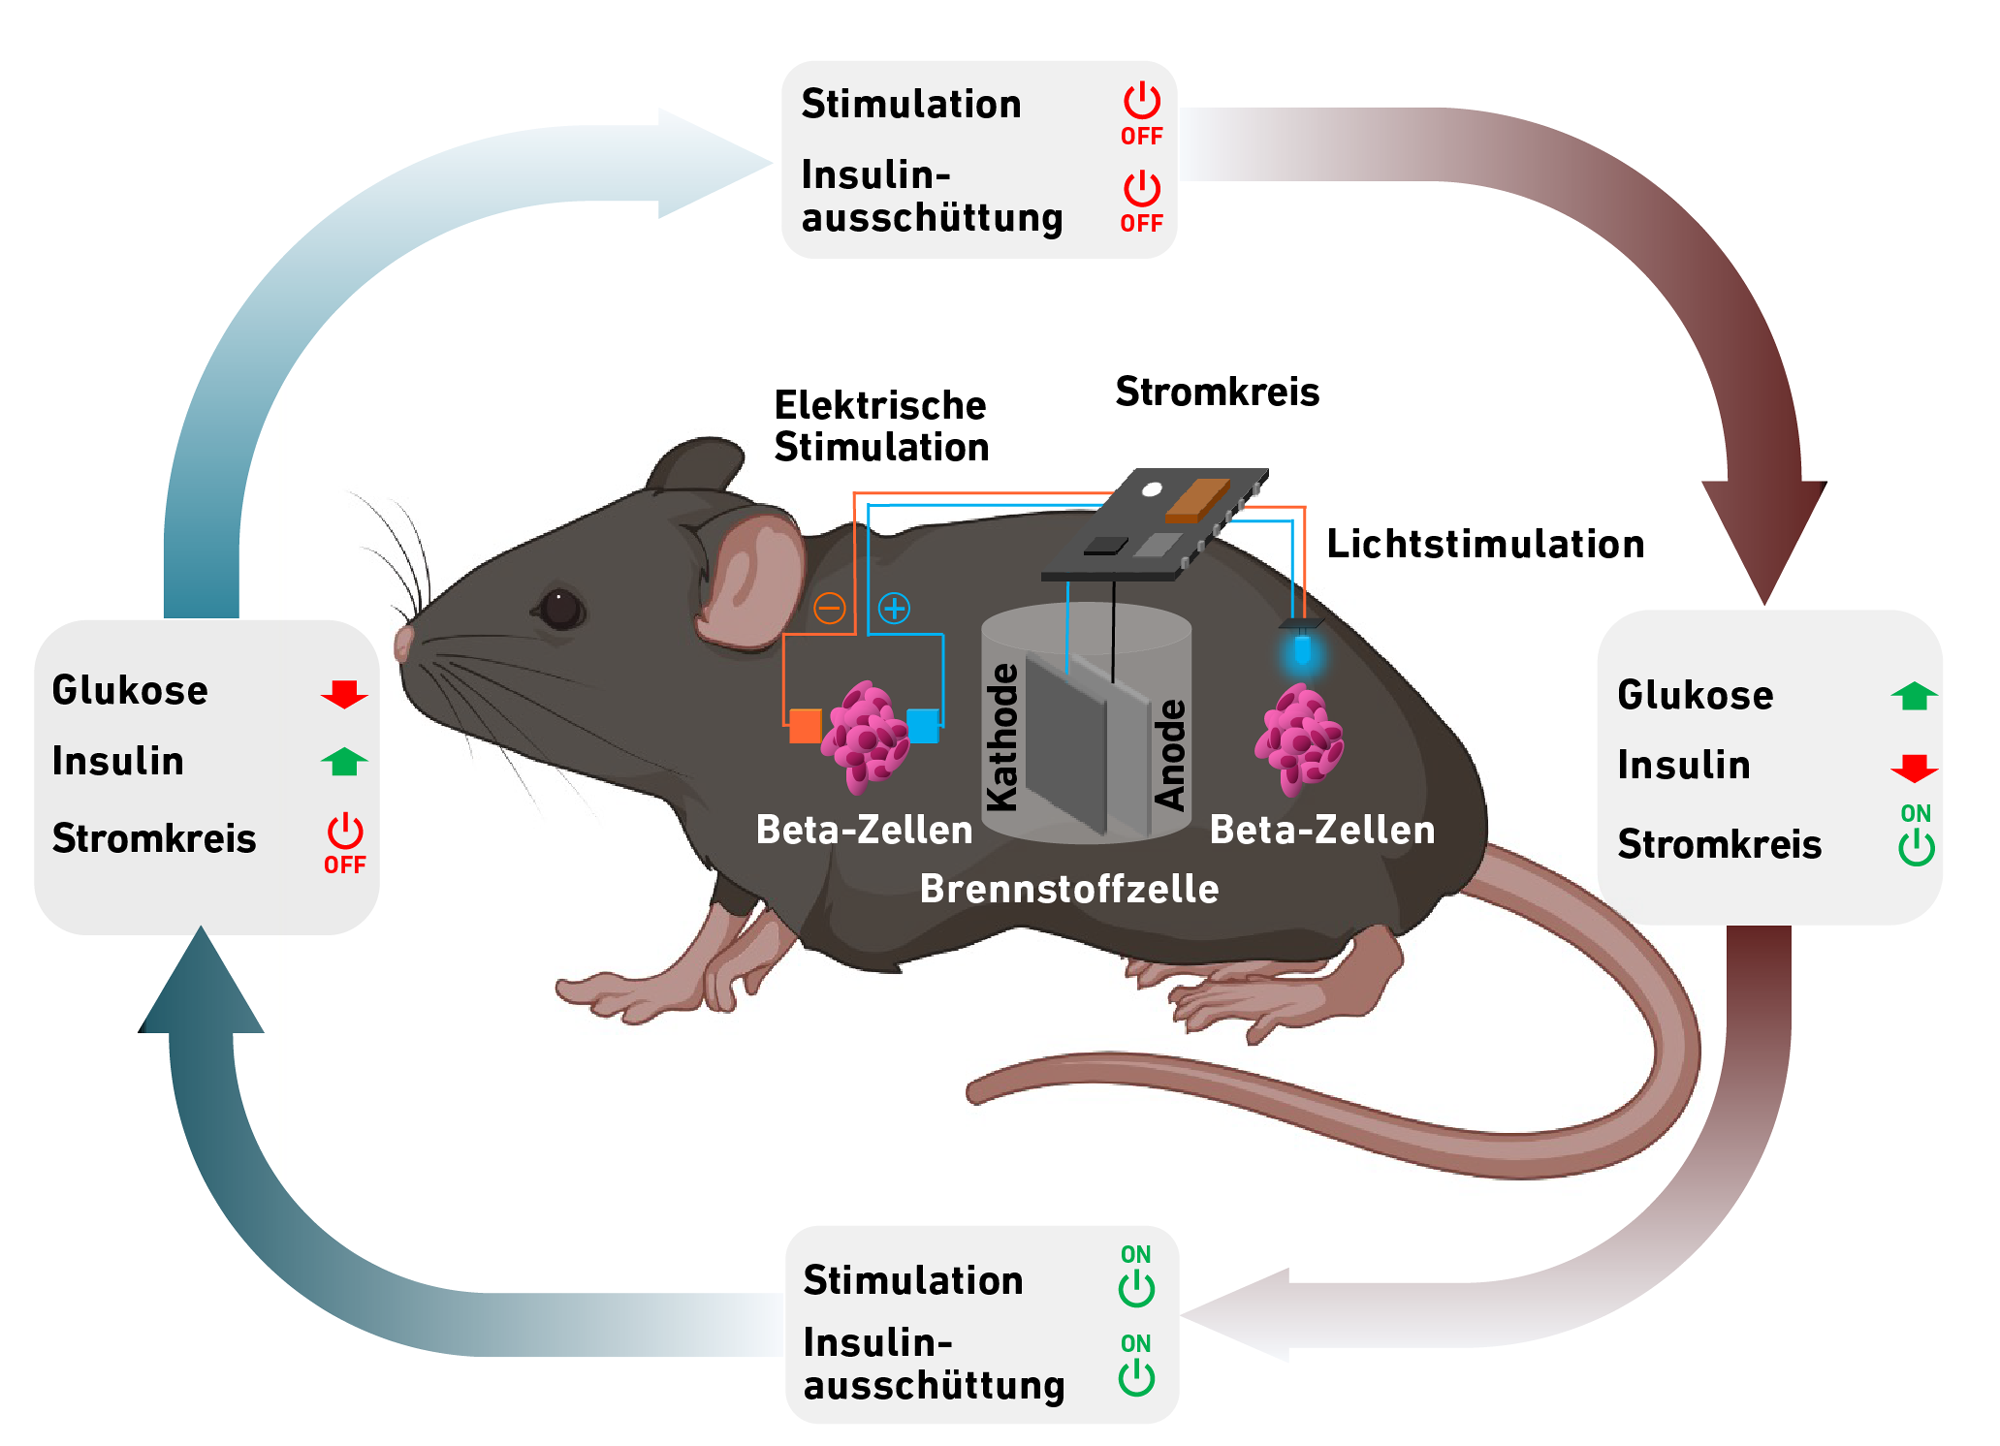 Vergrösserte Ansicht: Schema. Brennstoffzelle in einer Maus, Betazellen, Stromkreis und zyklischer Ablauf Energiegewinnung und Insulinsenkung dargestellt.